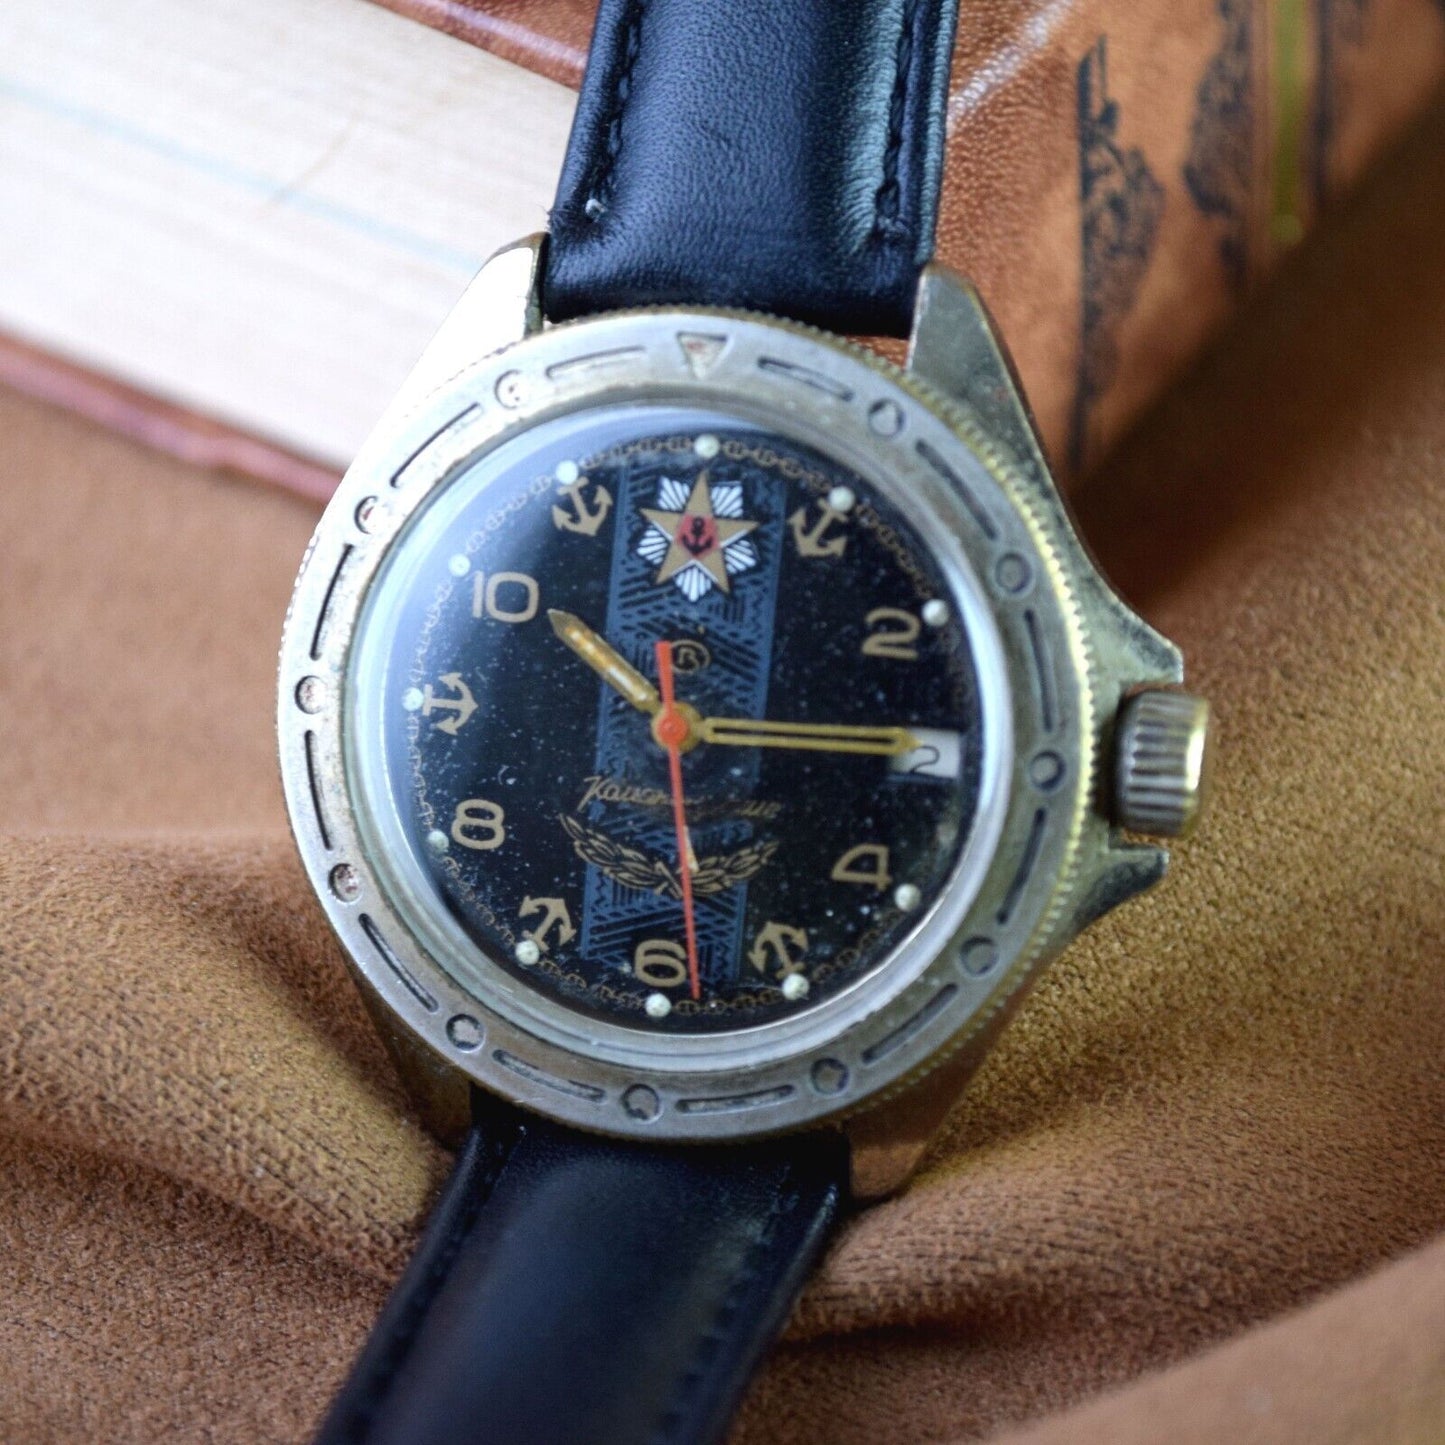 Soviet Watch Vostok Komandirskie Military Equipment Vintage Mens Watch Soviet